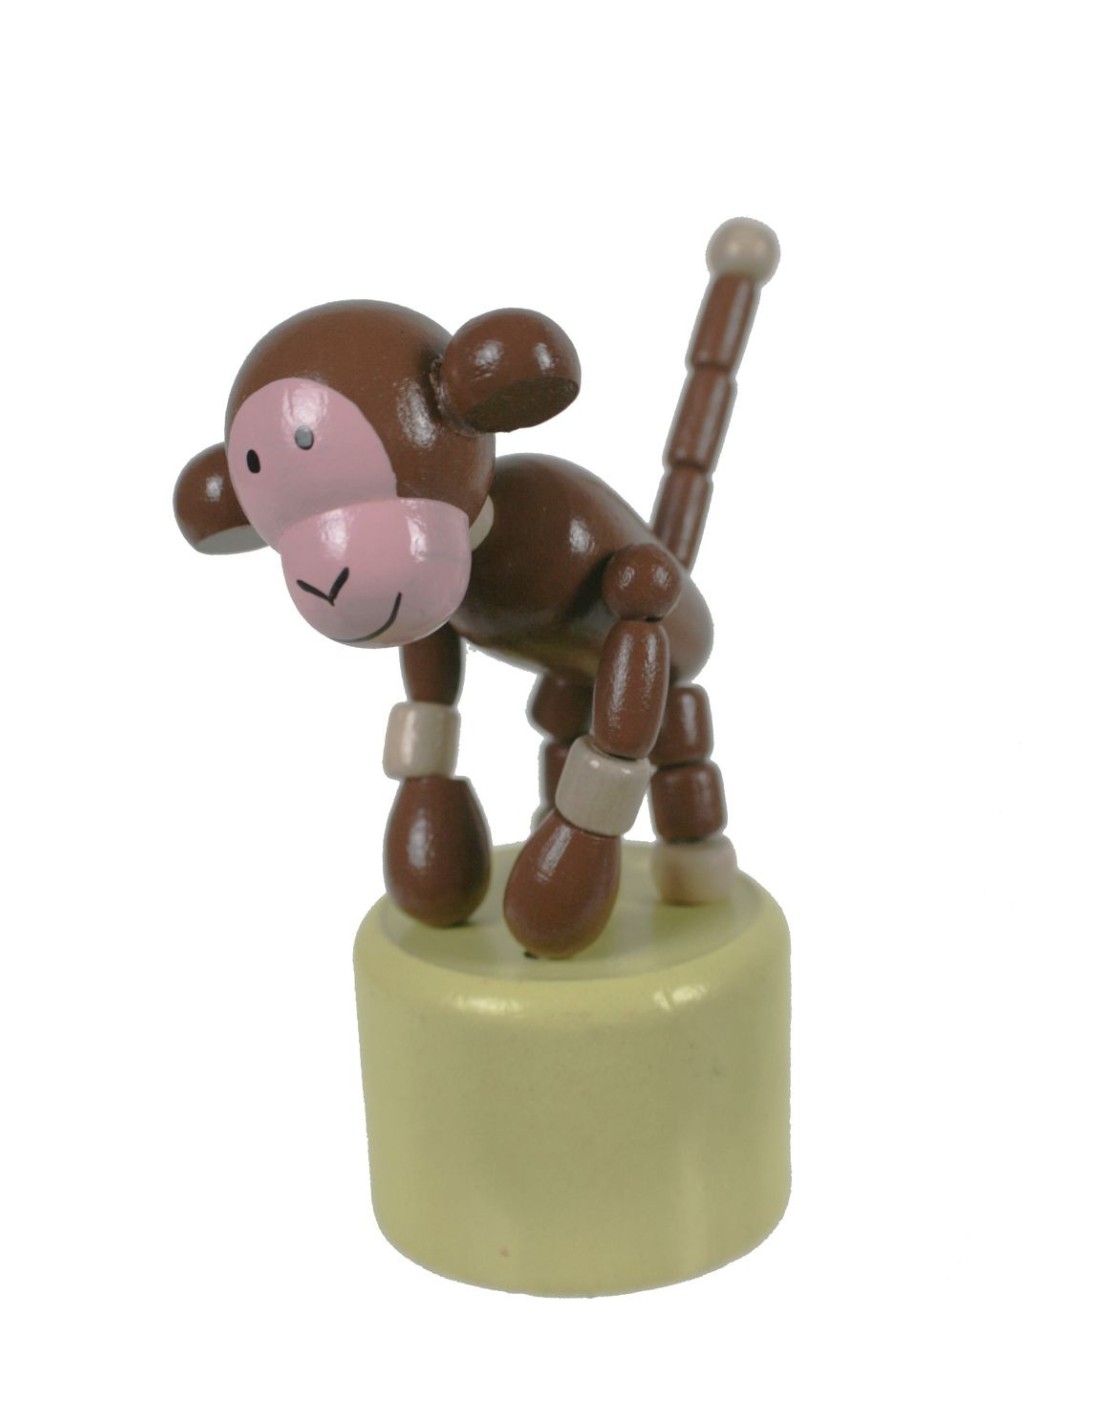 Mono de madera articulado juguete tradicional de apretar con base de madera juego de habilidad infantil